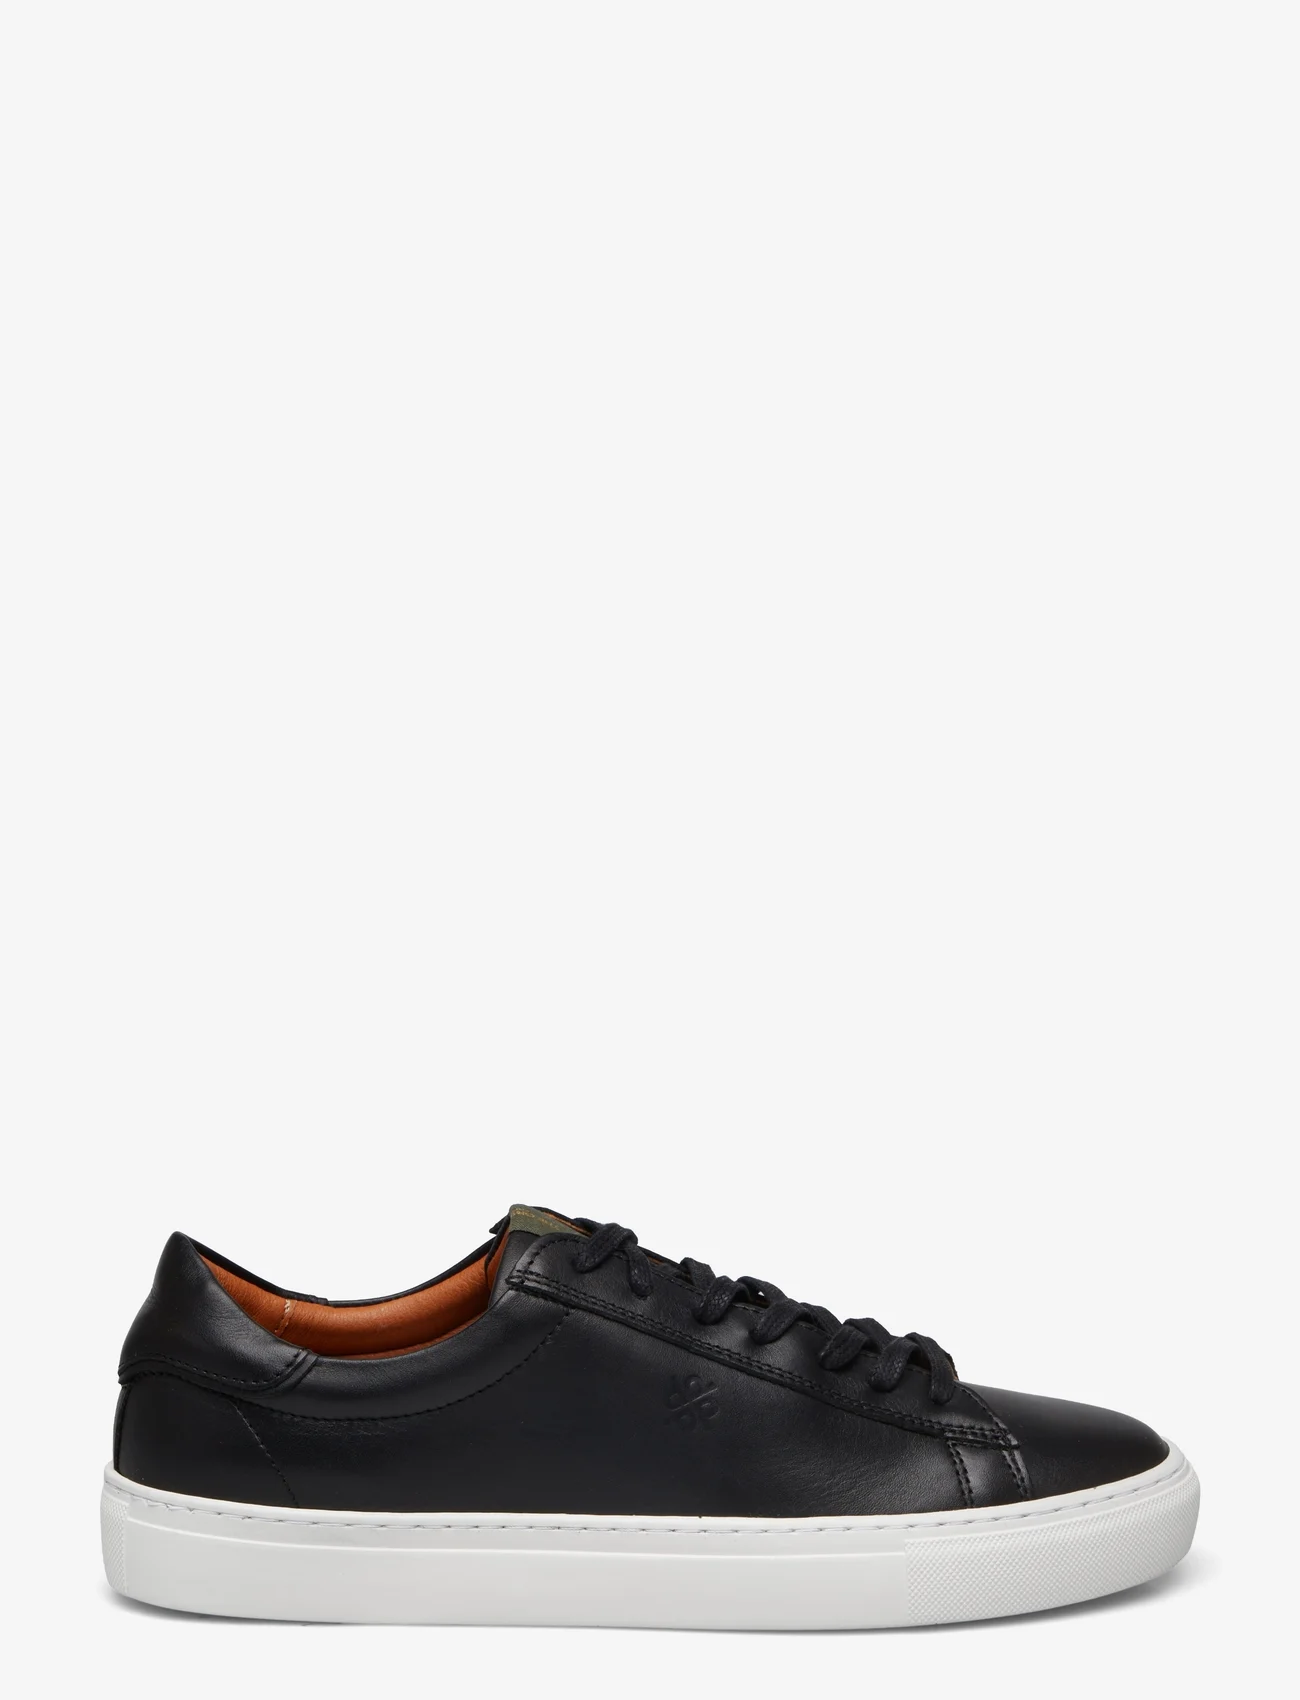 Playboy Footwear - Henri - laag sneakers - black leather - 1